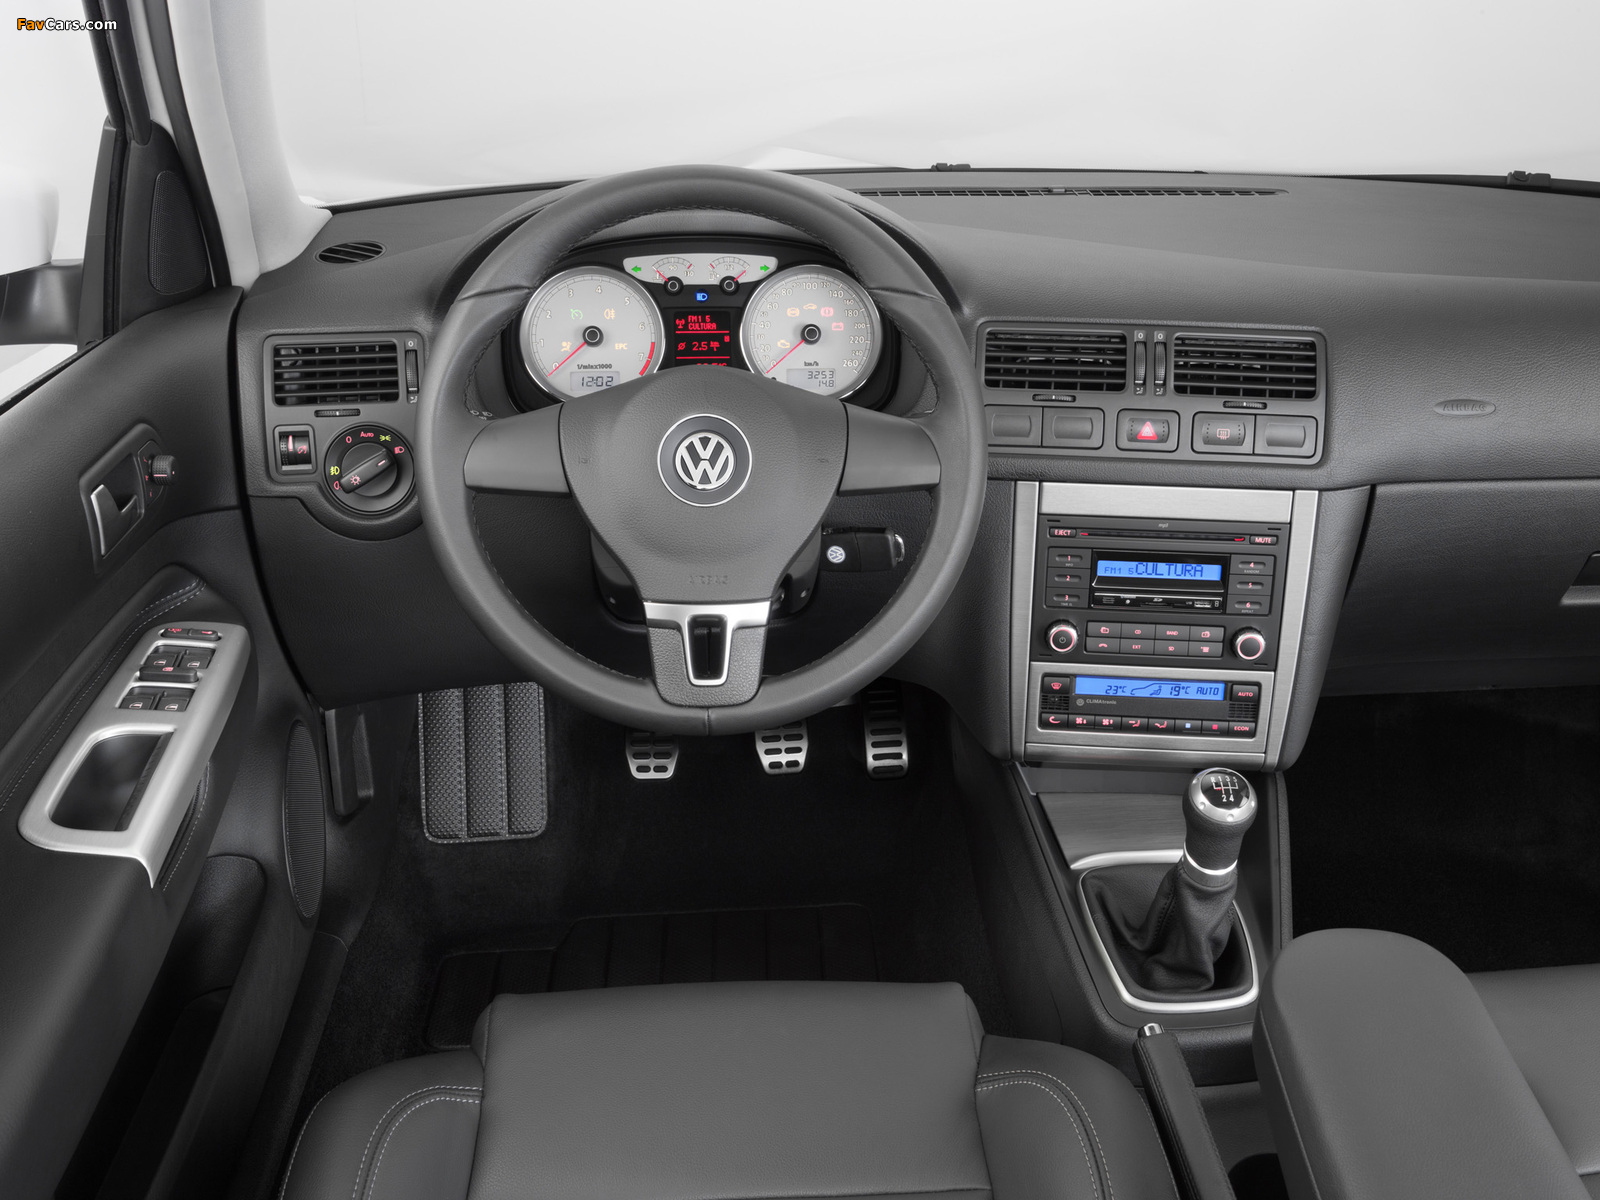 Volkswagen Golf Sportline BR-spec (Typ 1J) 2012 pictures (1600 x 1200)